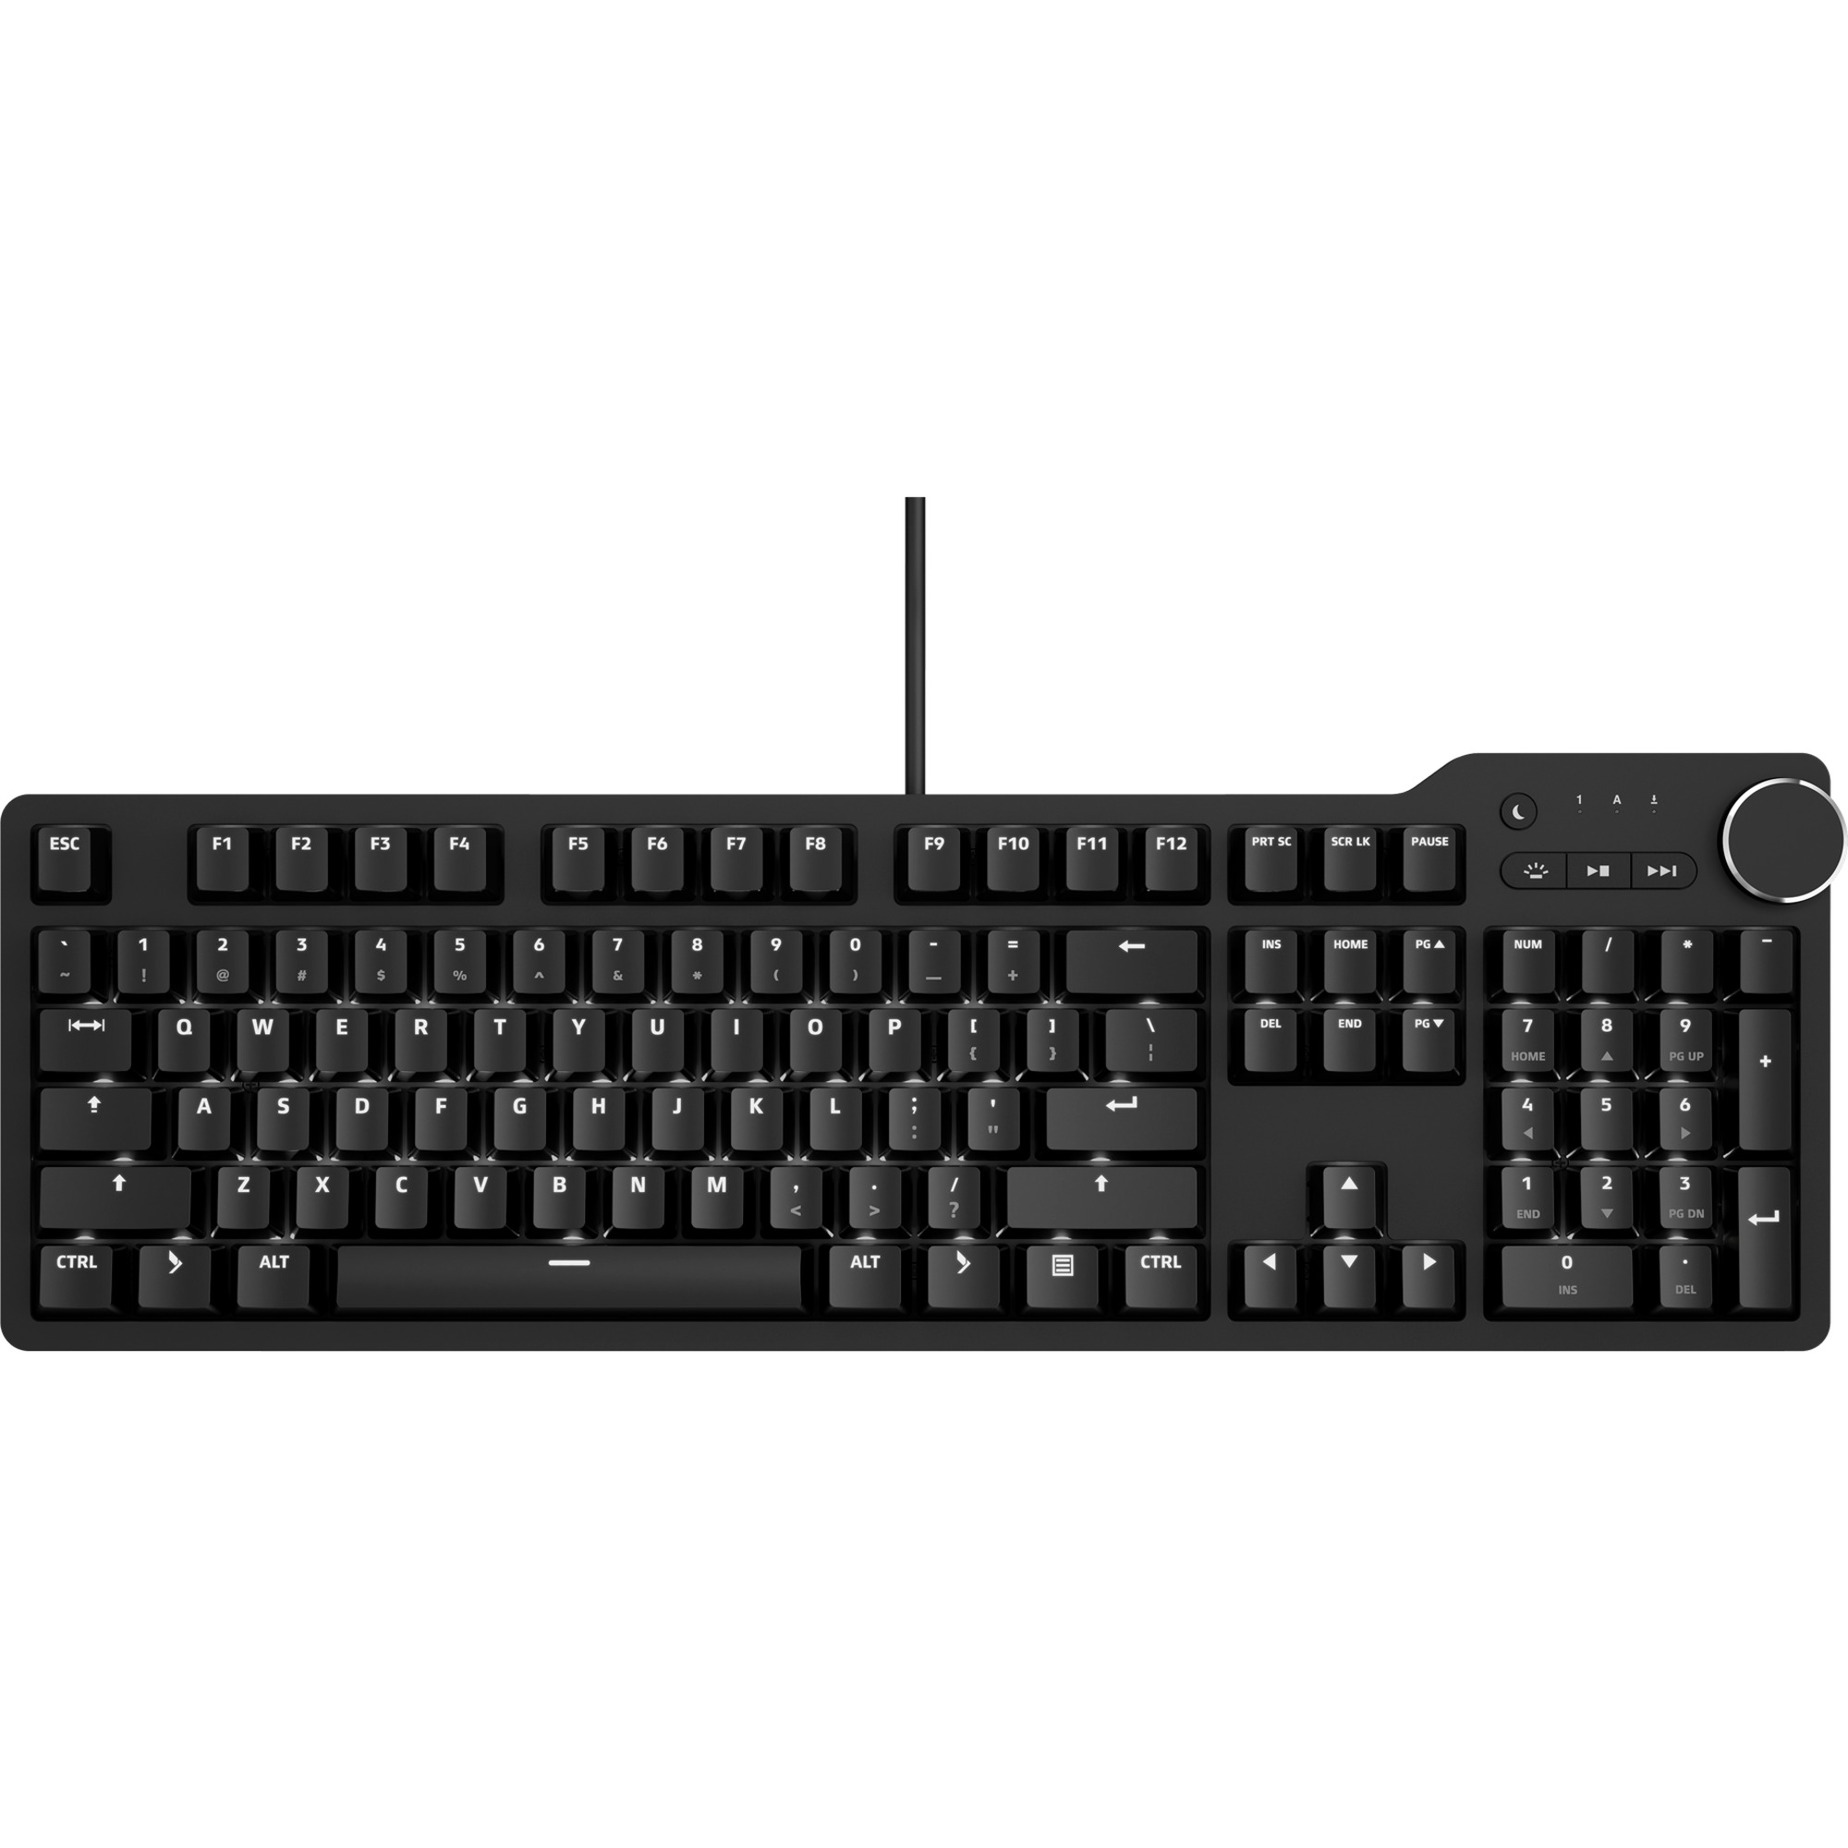 6 Professional, Gaming-Tastatur von Das Keyboard